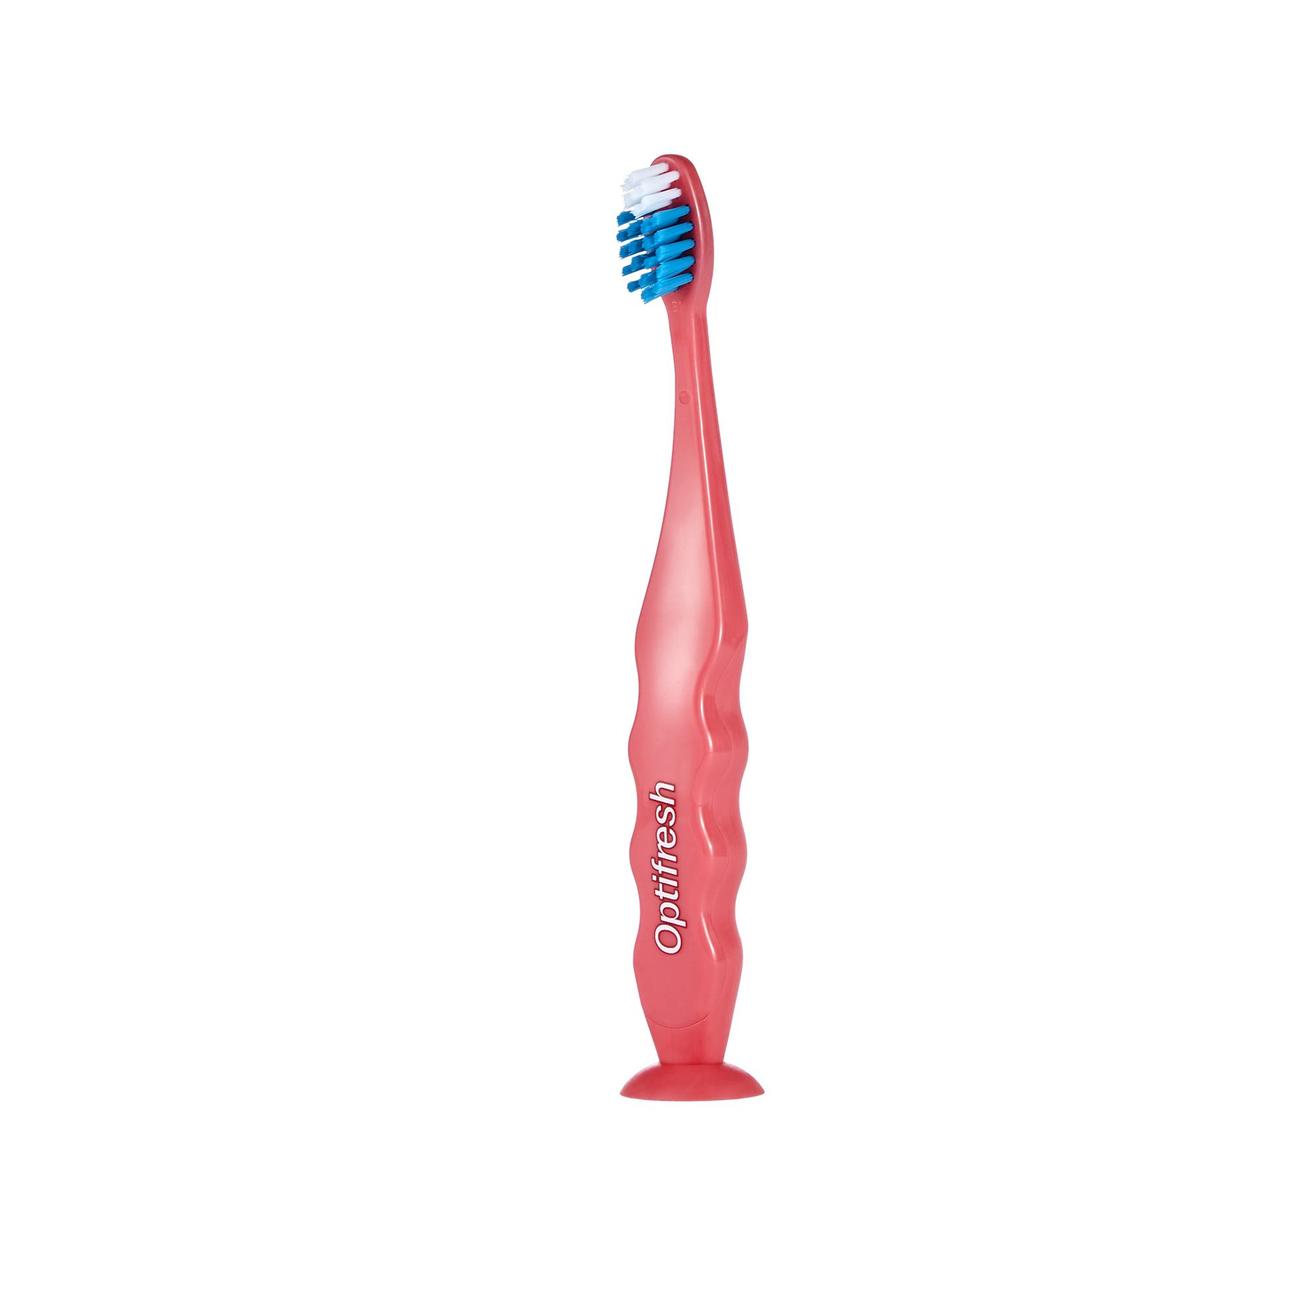 Tilbud: Kids Soft Toothbrush - Pink kr 35 på Oriflame